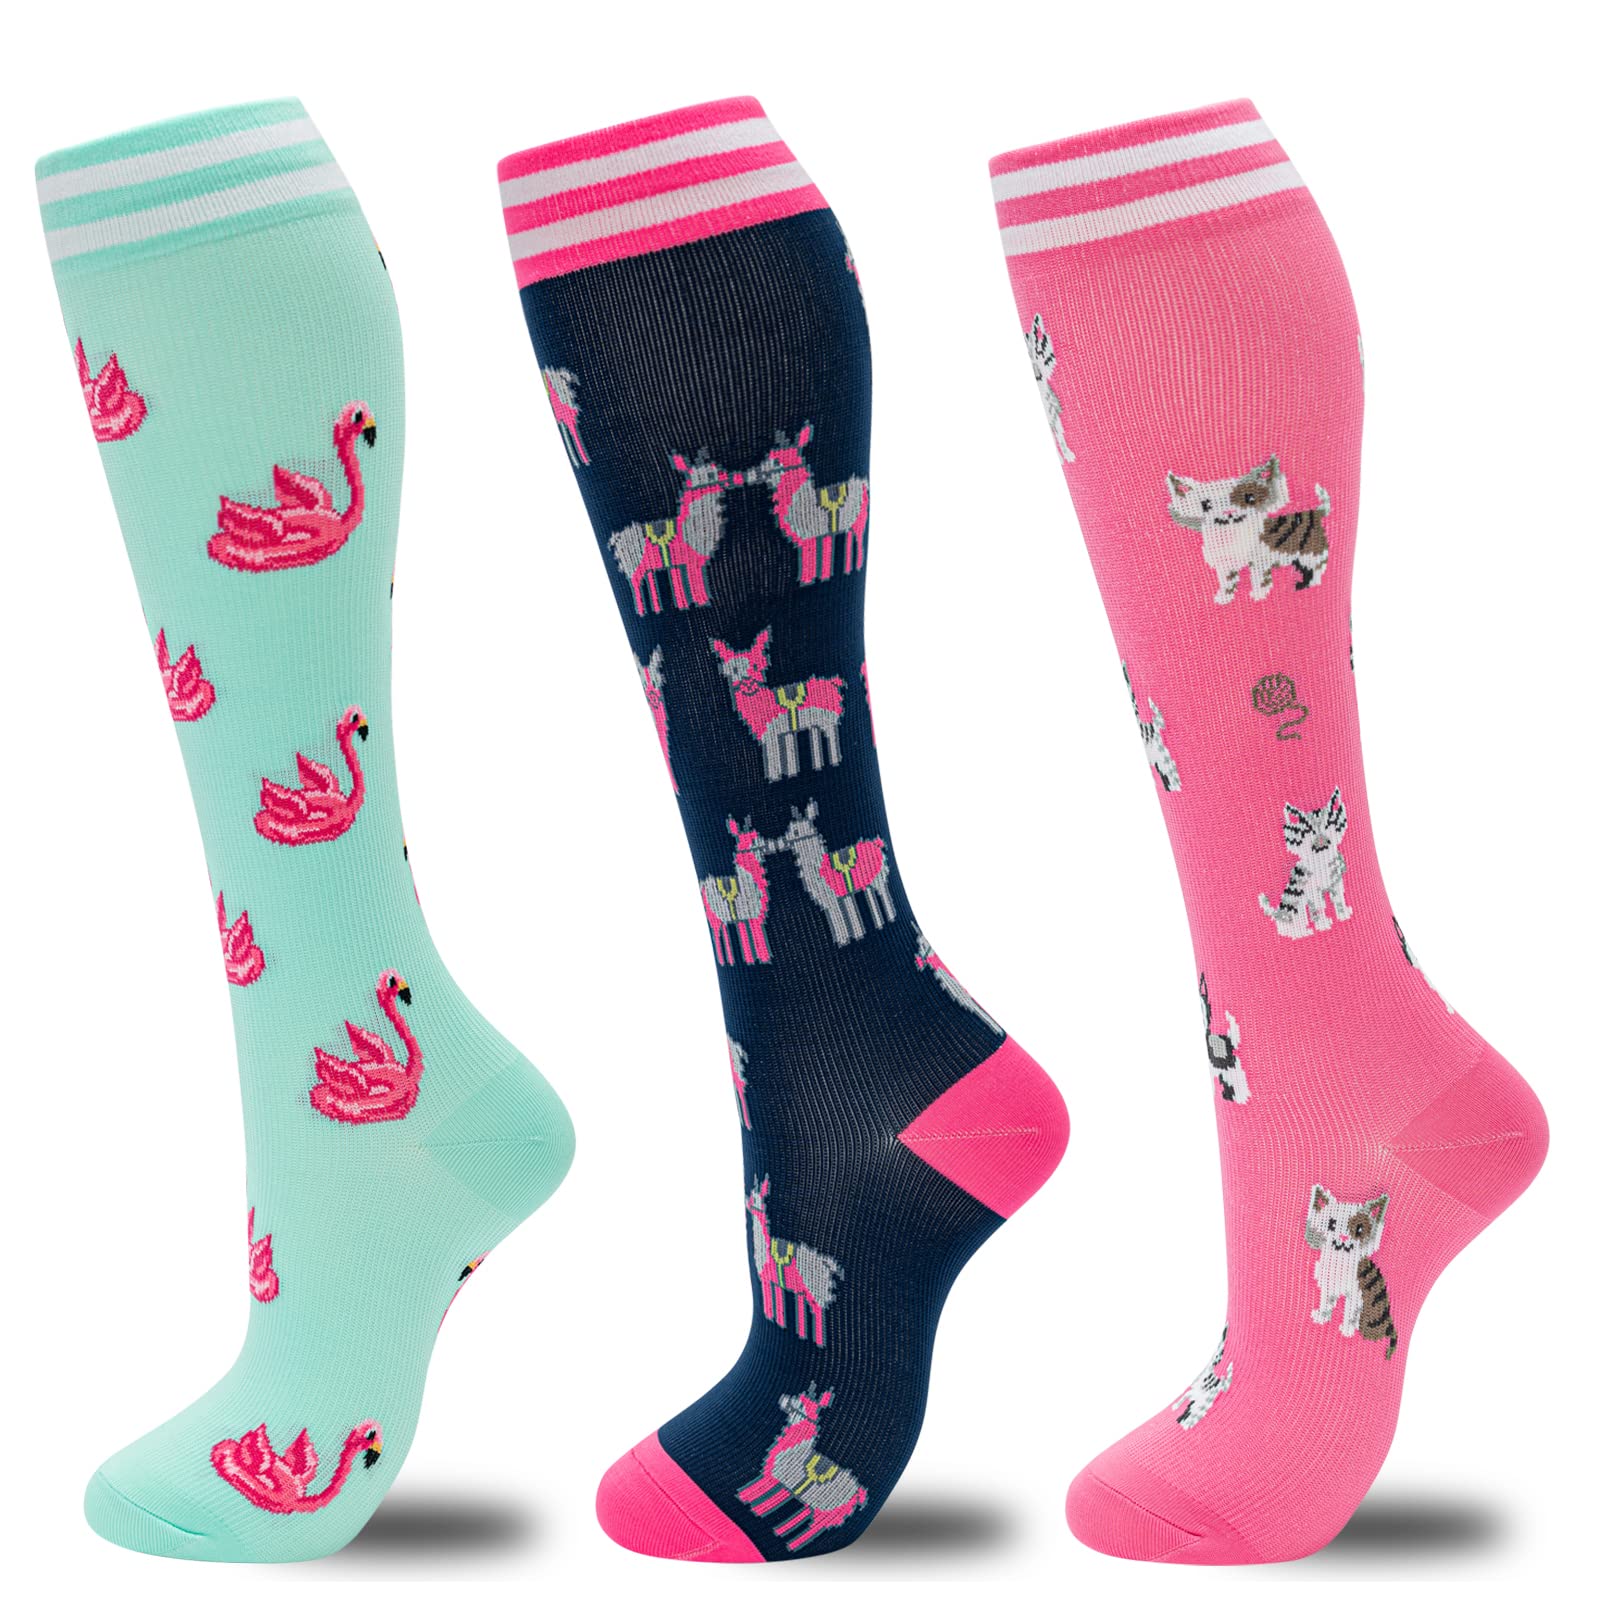 fenglaoda compression Socks for Women Men circulation 20-30 mmHg cute Fun Support Socks For Nurse, Pregnancy, Travel, Flight